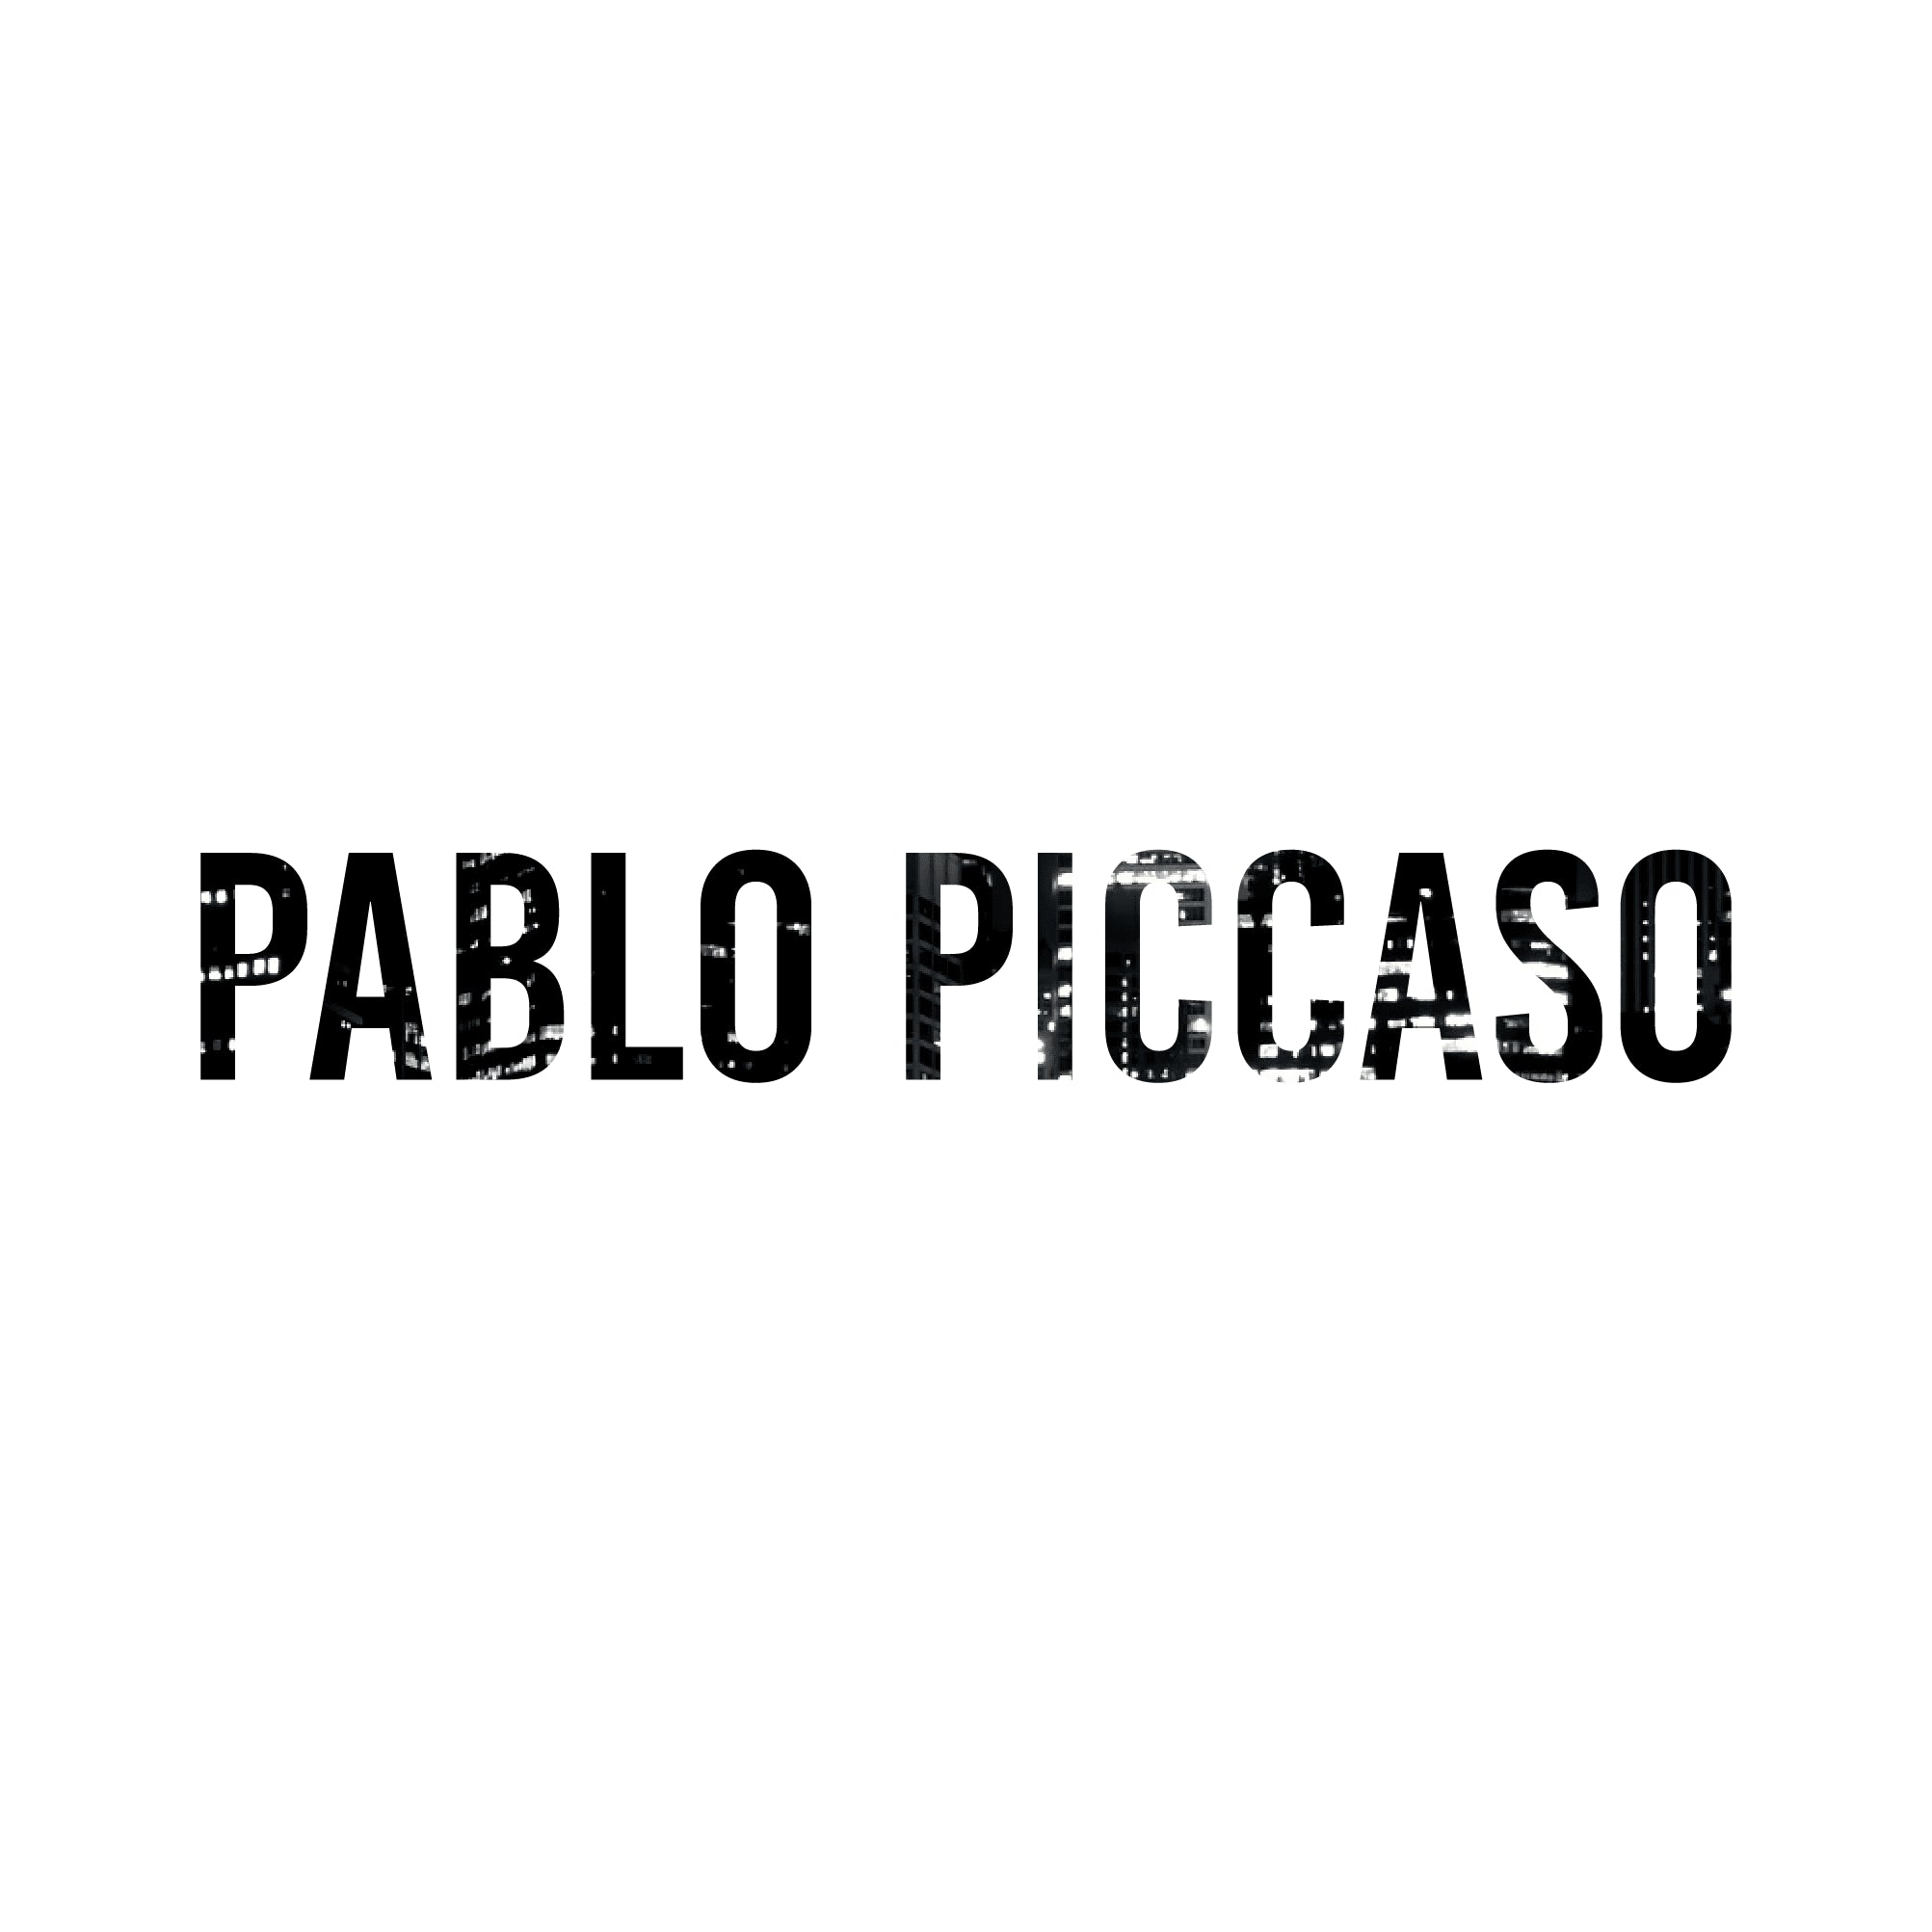 Pablo Piccaso